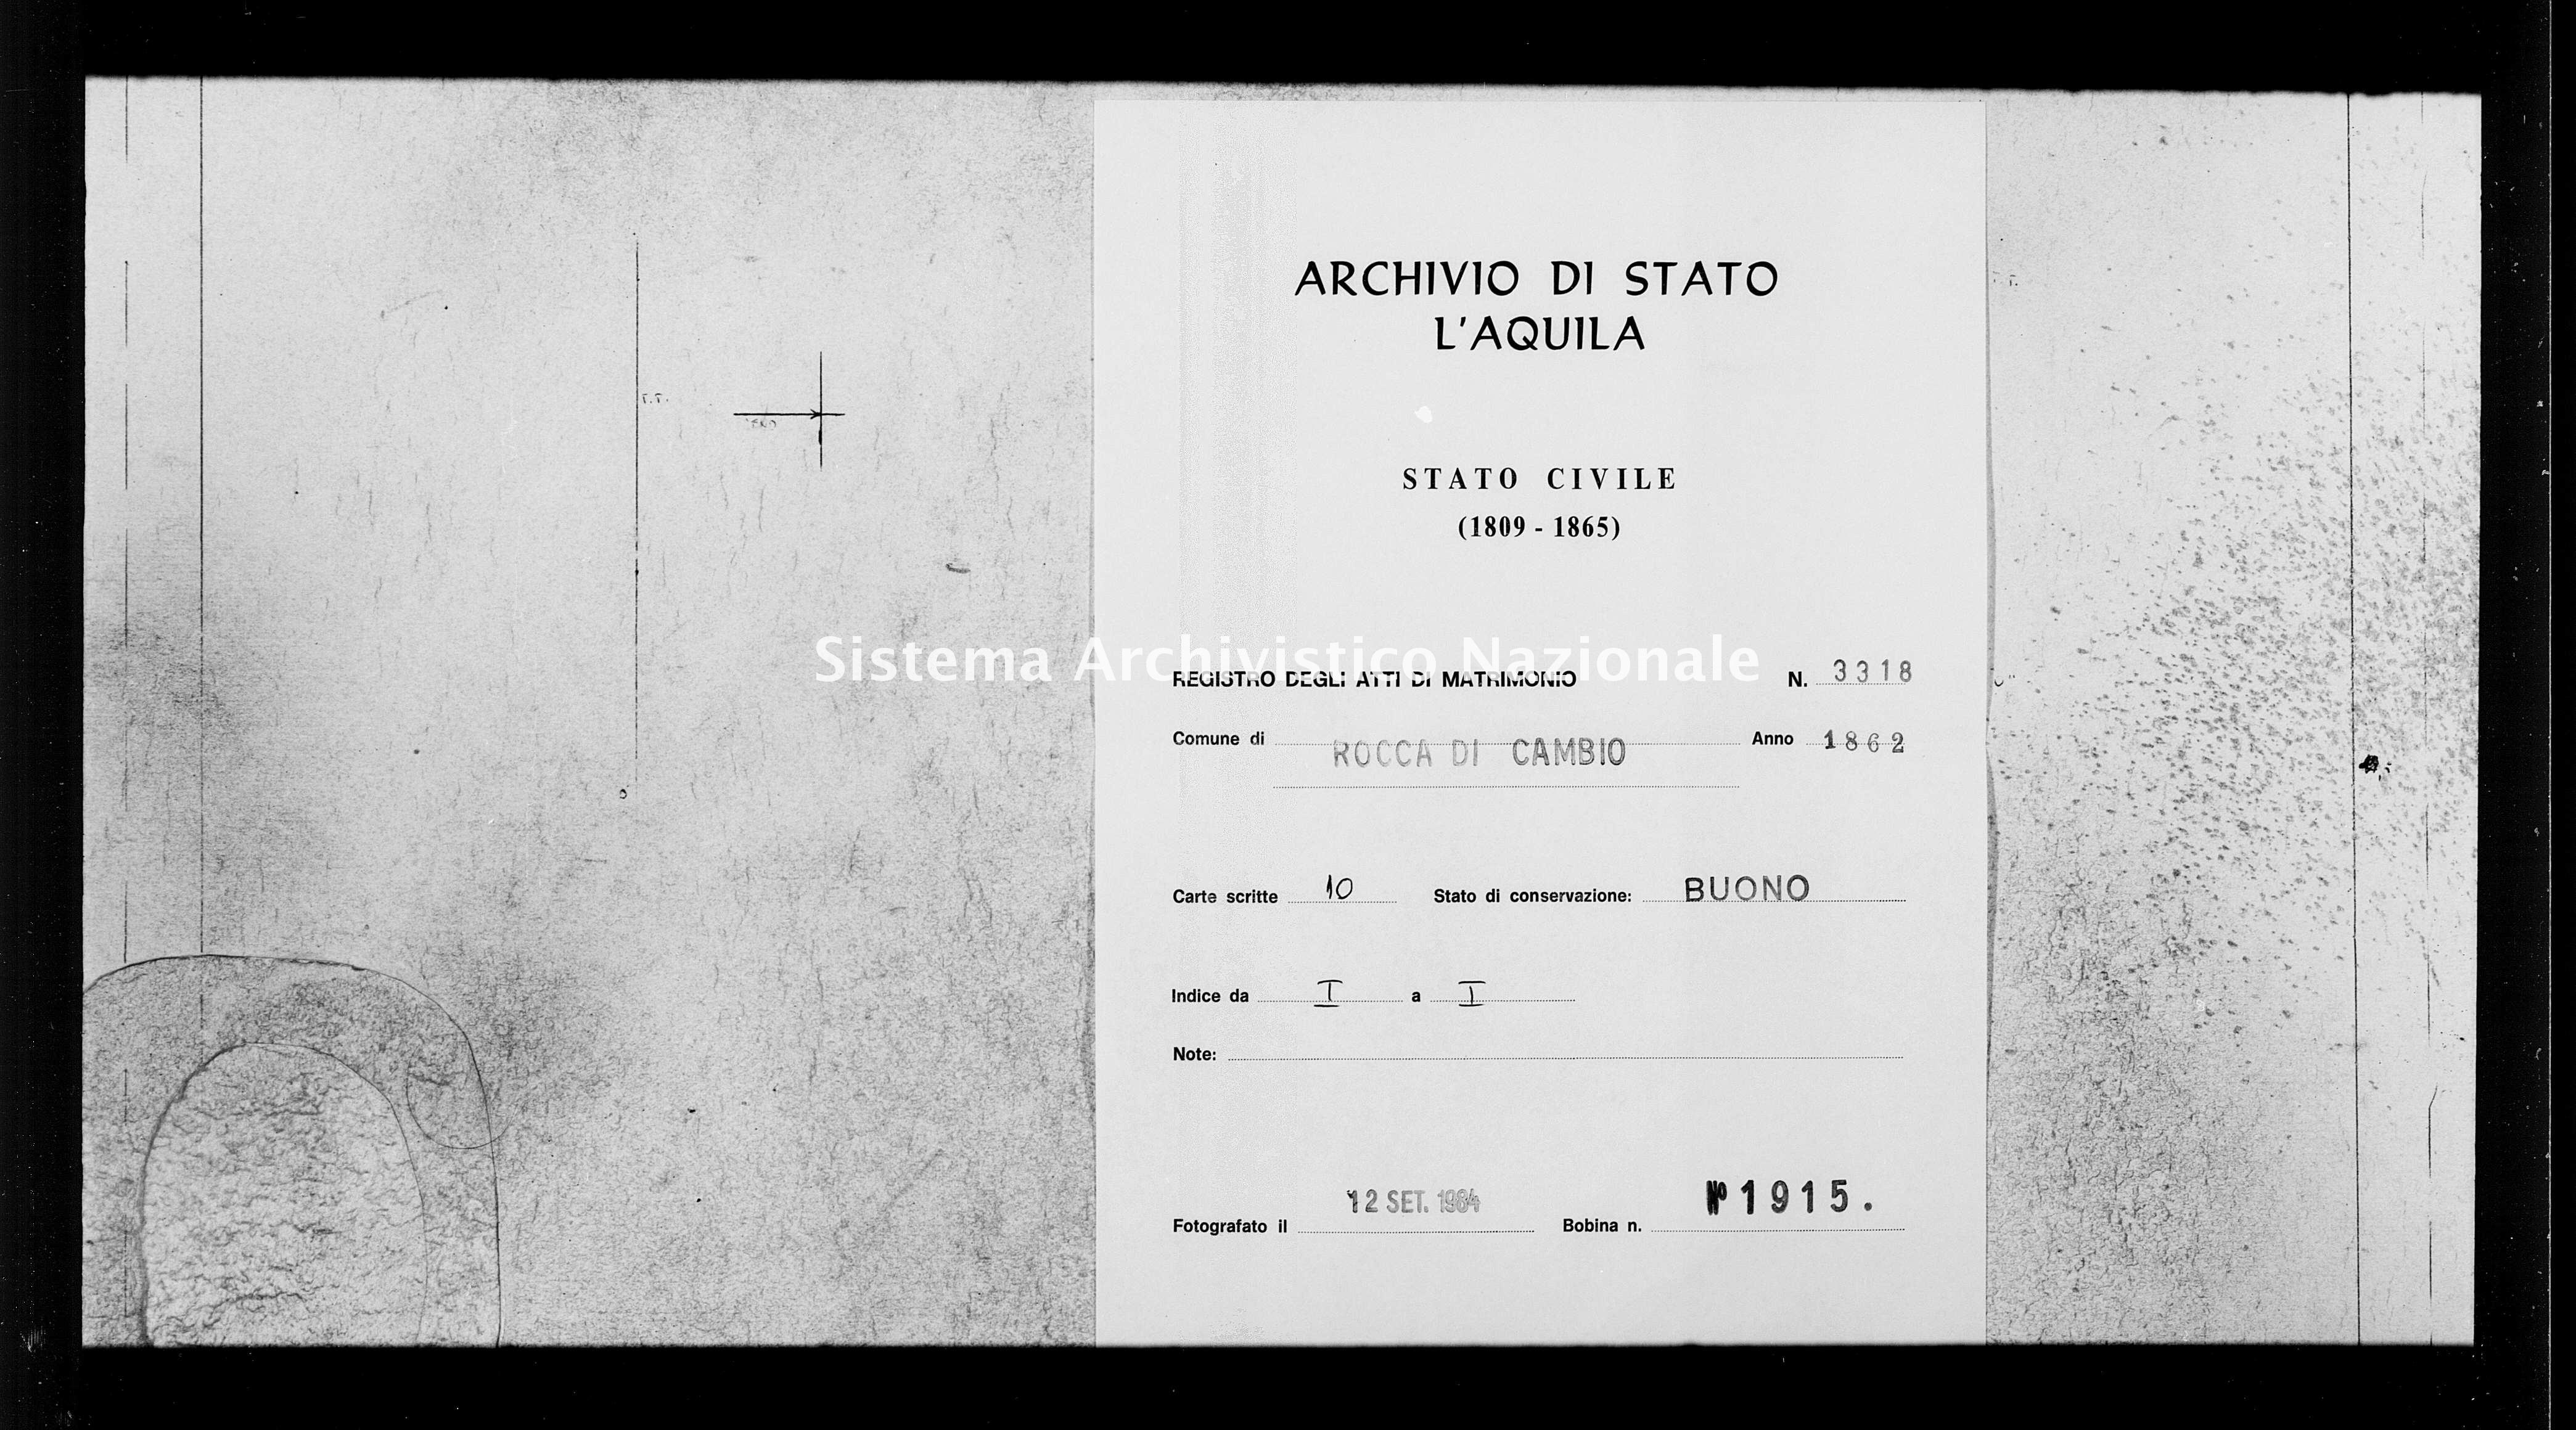 Archivio di stato di L'aquila - Stato civile italiano - Rocca di Cambio - Matrimoni - 1862 - 3318 -